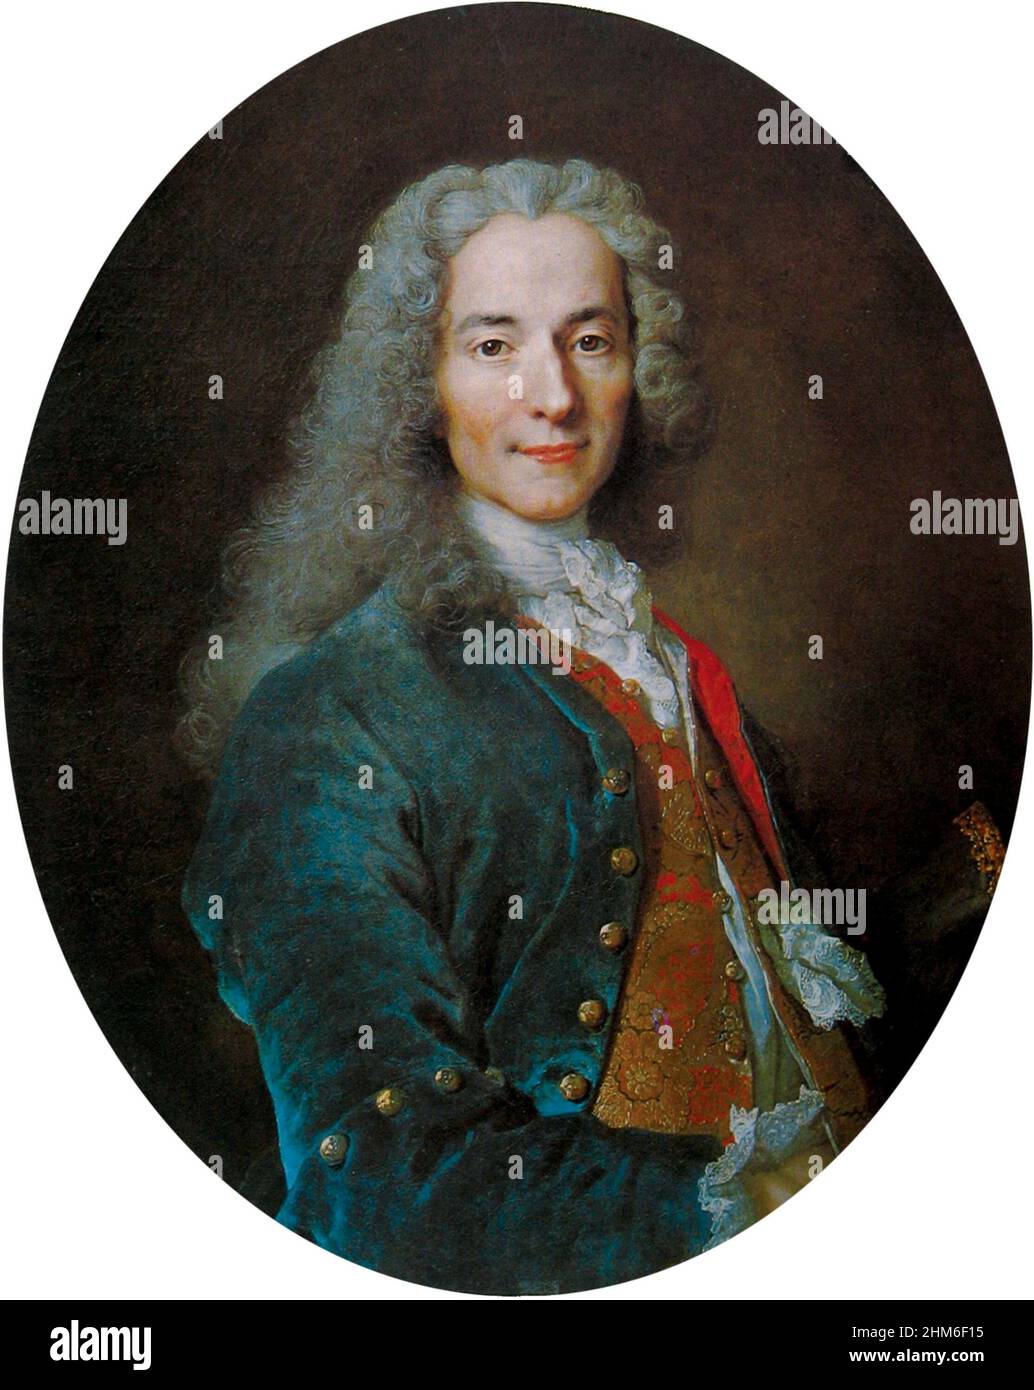 Un ritratto dello scrittore e filosofo francese Voltaire (vero nome Francois-Marie Arouet). Ritratto di Nicolas de Largillière dal 1724, quando Voltaire aveva 30 anni. Foto Stock